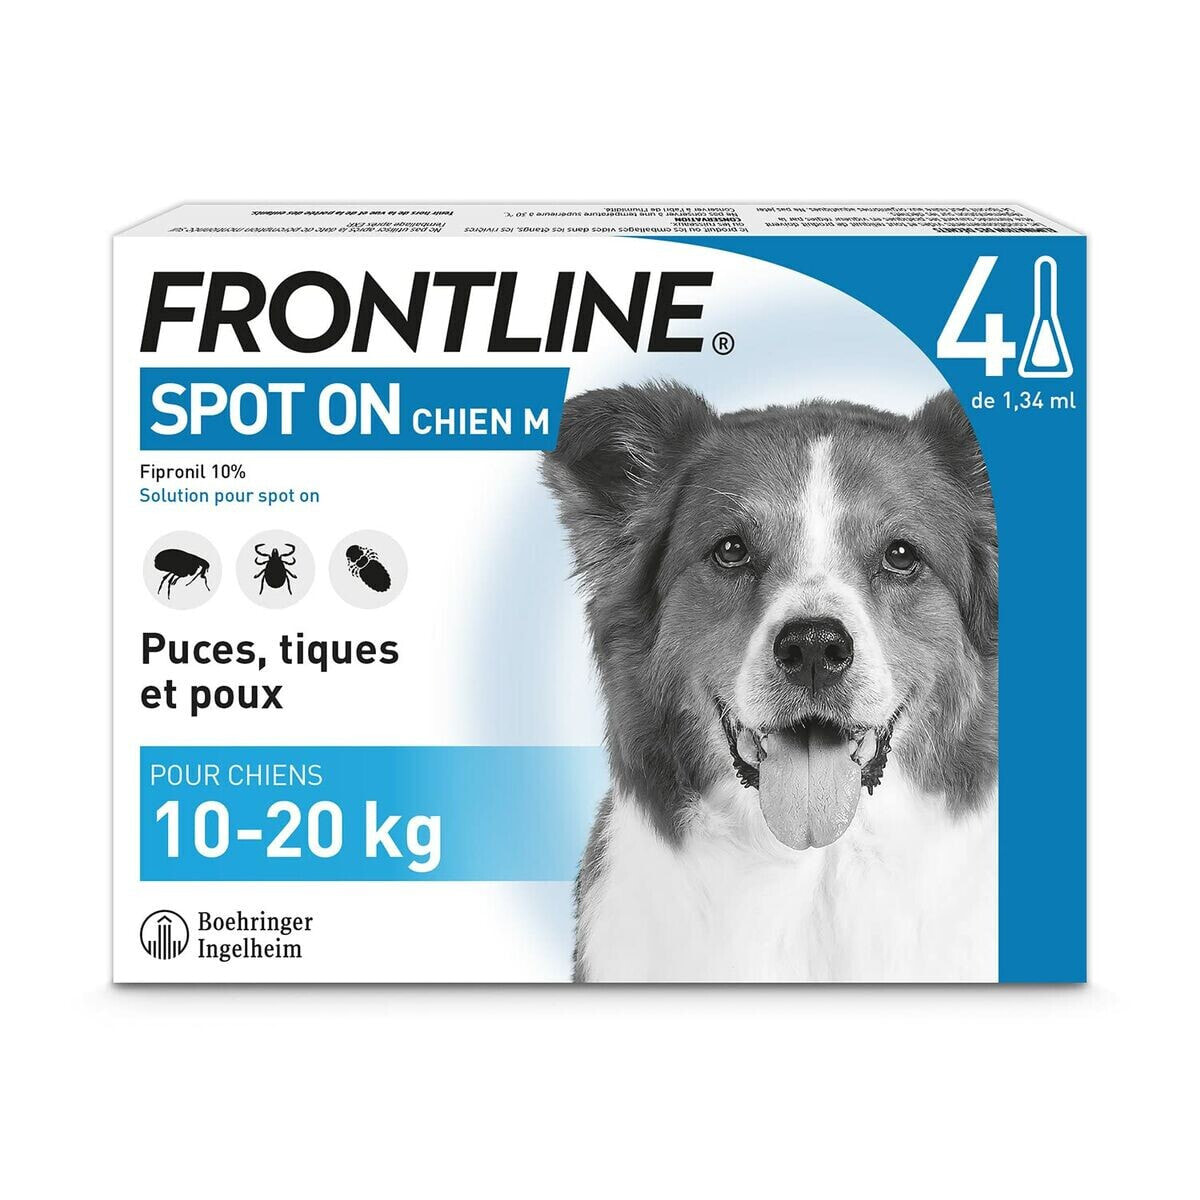 Anti-parasites Frontline Dog 10-20 Kg 1,34 ml 4 Units